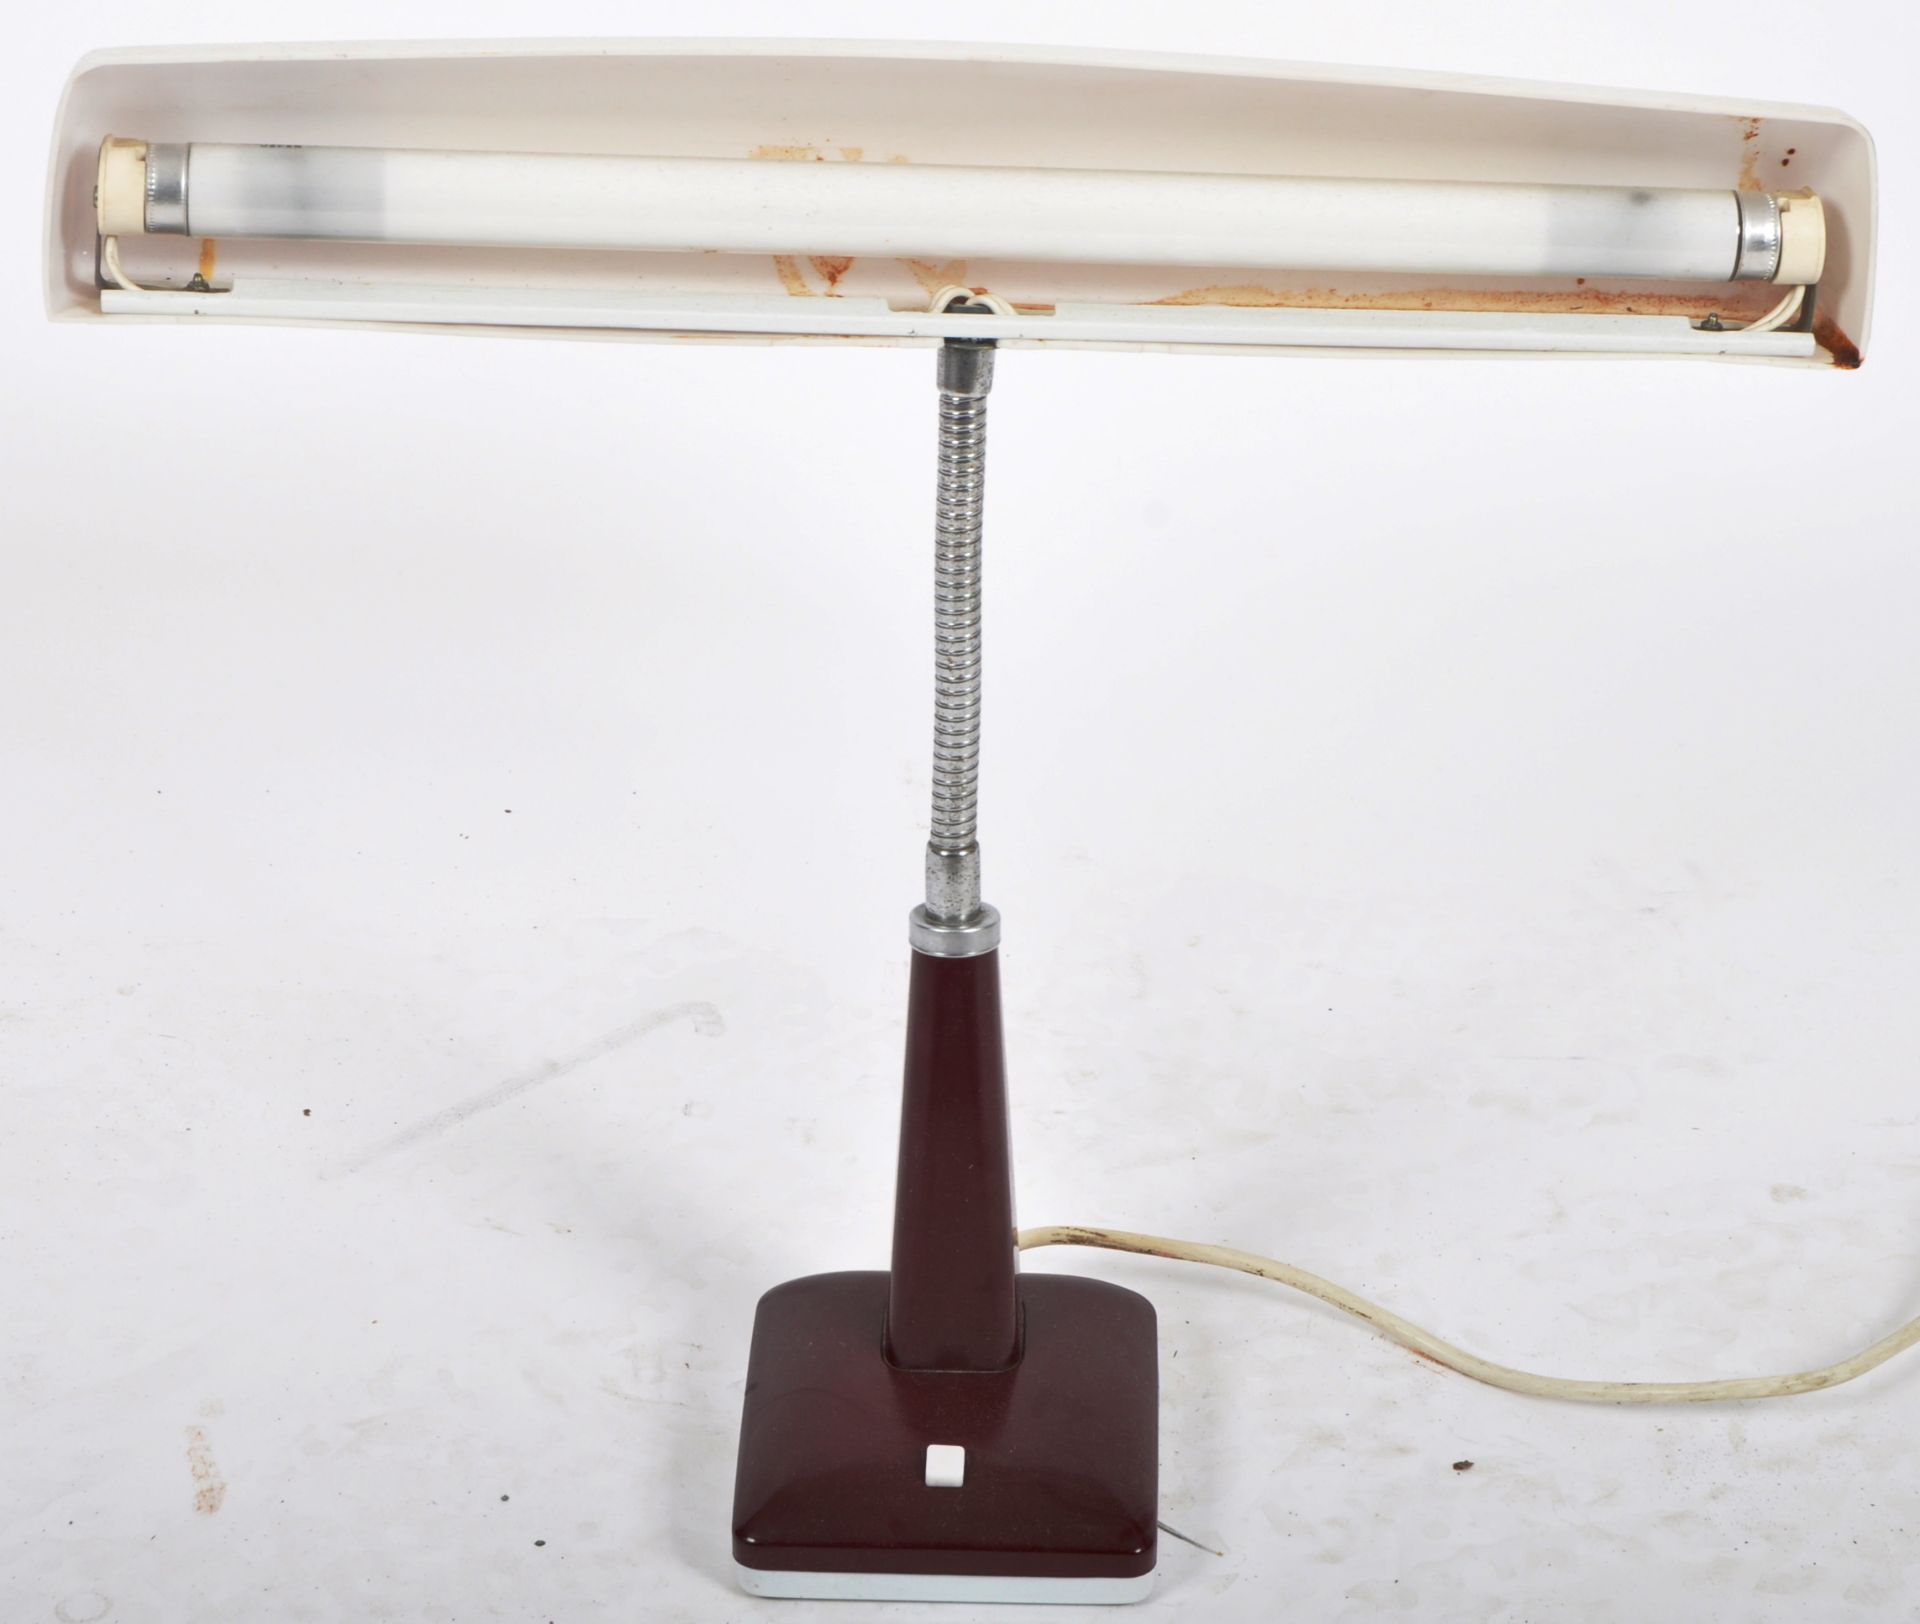 PIFCO - MODEL 993 - DESIGNER ADJUSTABLE DESK LAMP - Image 2 of 6